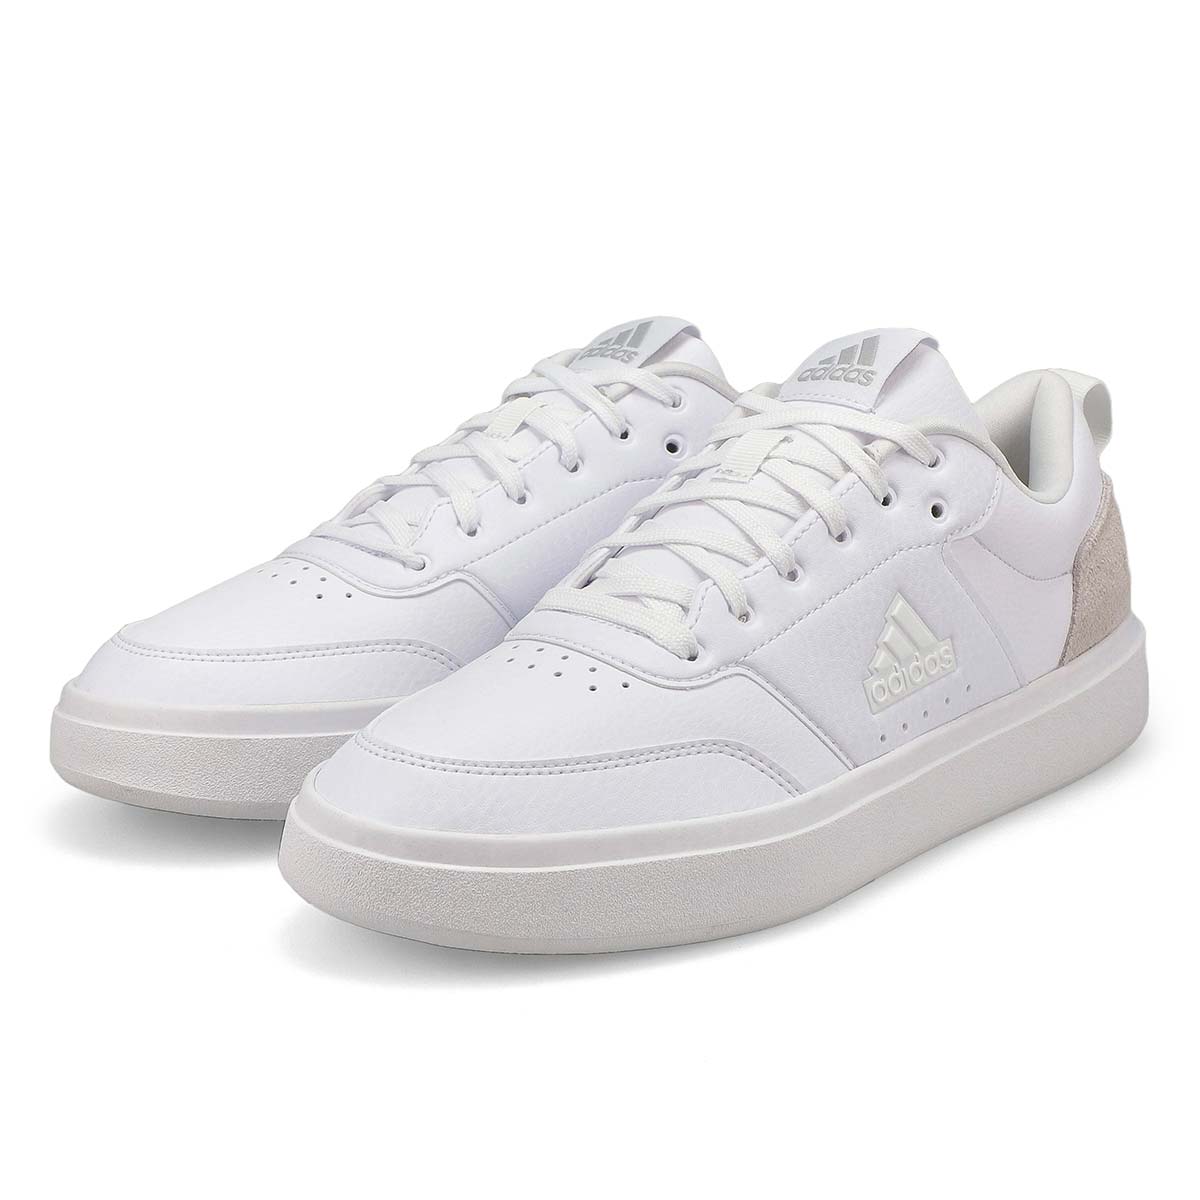 adidas Men's Park St Sneaker - White/White | SoftMoc.com